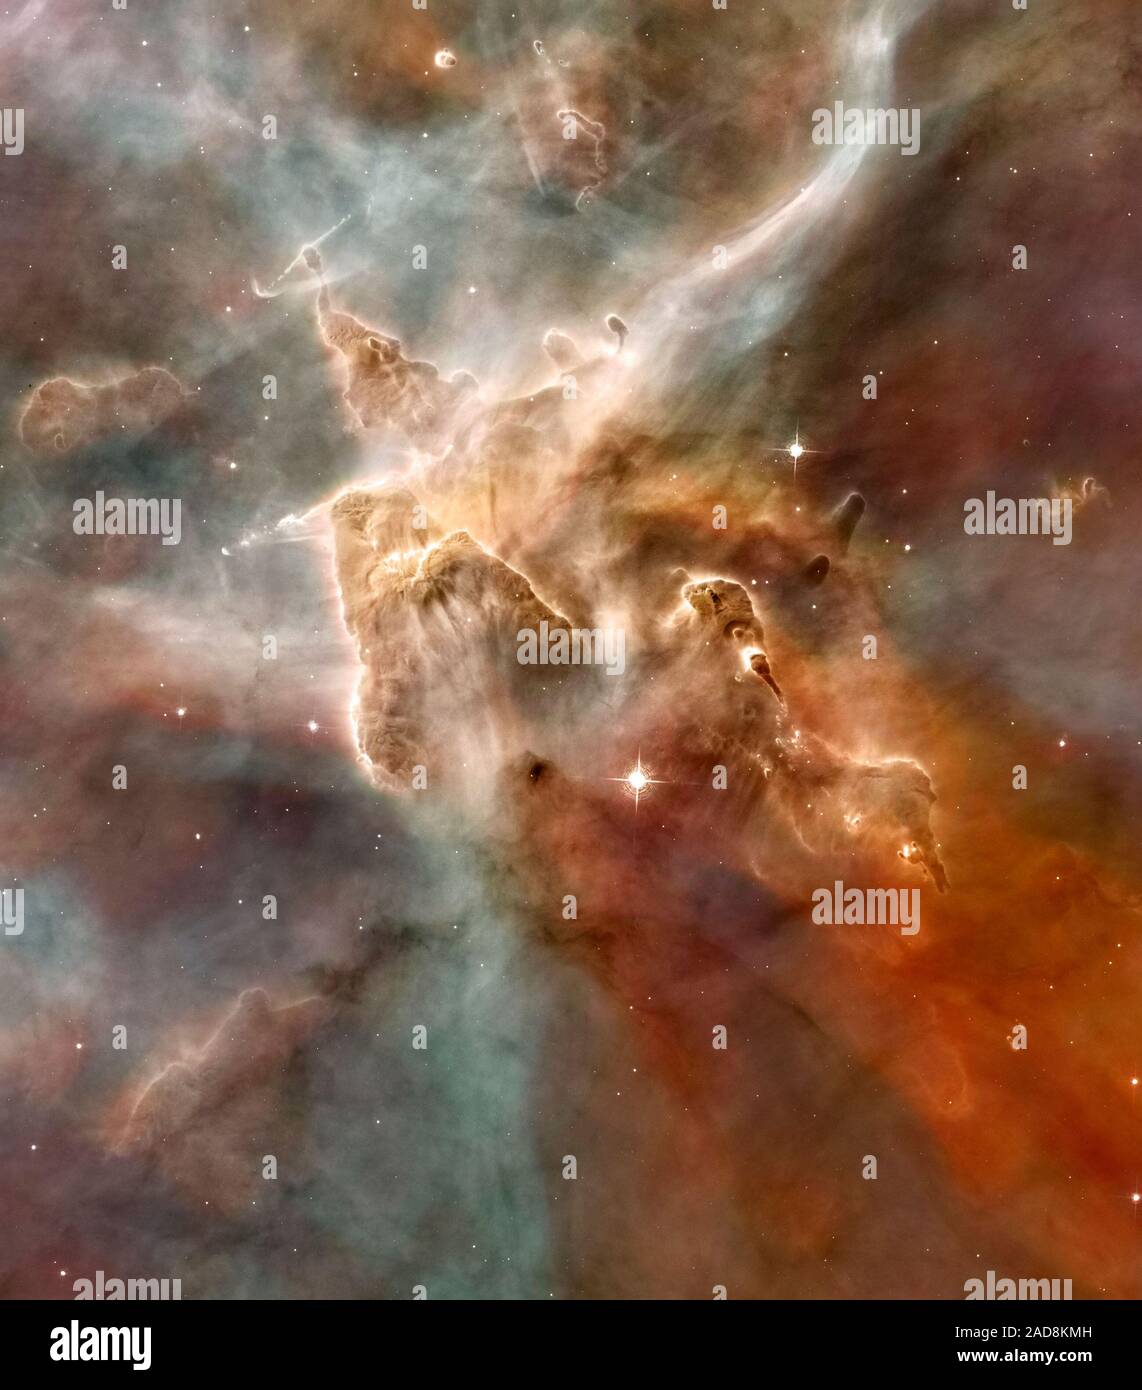 Una torreggiante 'montagna' del freddo gas idrogeno cucita con la polvere è il sito di nuova formazione stellare nella nebulosa carina. Il grande pilastro di gas viene erosa dalla radiazione ultravioletta dal neonato più calde stelle nella nebulosa. I nomi di oggetto: Carina Nebula, NGC 7332 Tipo di immagine: Credito astronomici per immagine di Hubble: la NASA, ESA, N. Smith (Università della California a Berkeley,), e il telescopio Hubble Heritage Team (STScI/AURA) Credito per CTIO Immagine: N. Smith (Università della California di Berkeley) e NOAO/AURA/NSF Foto Stock